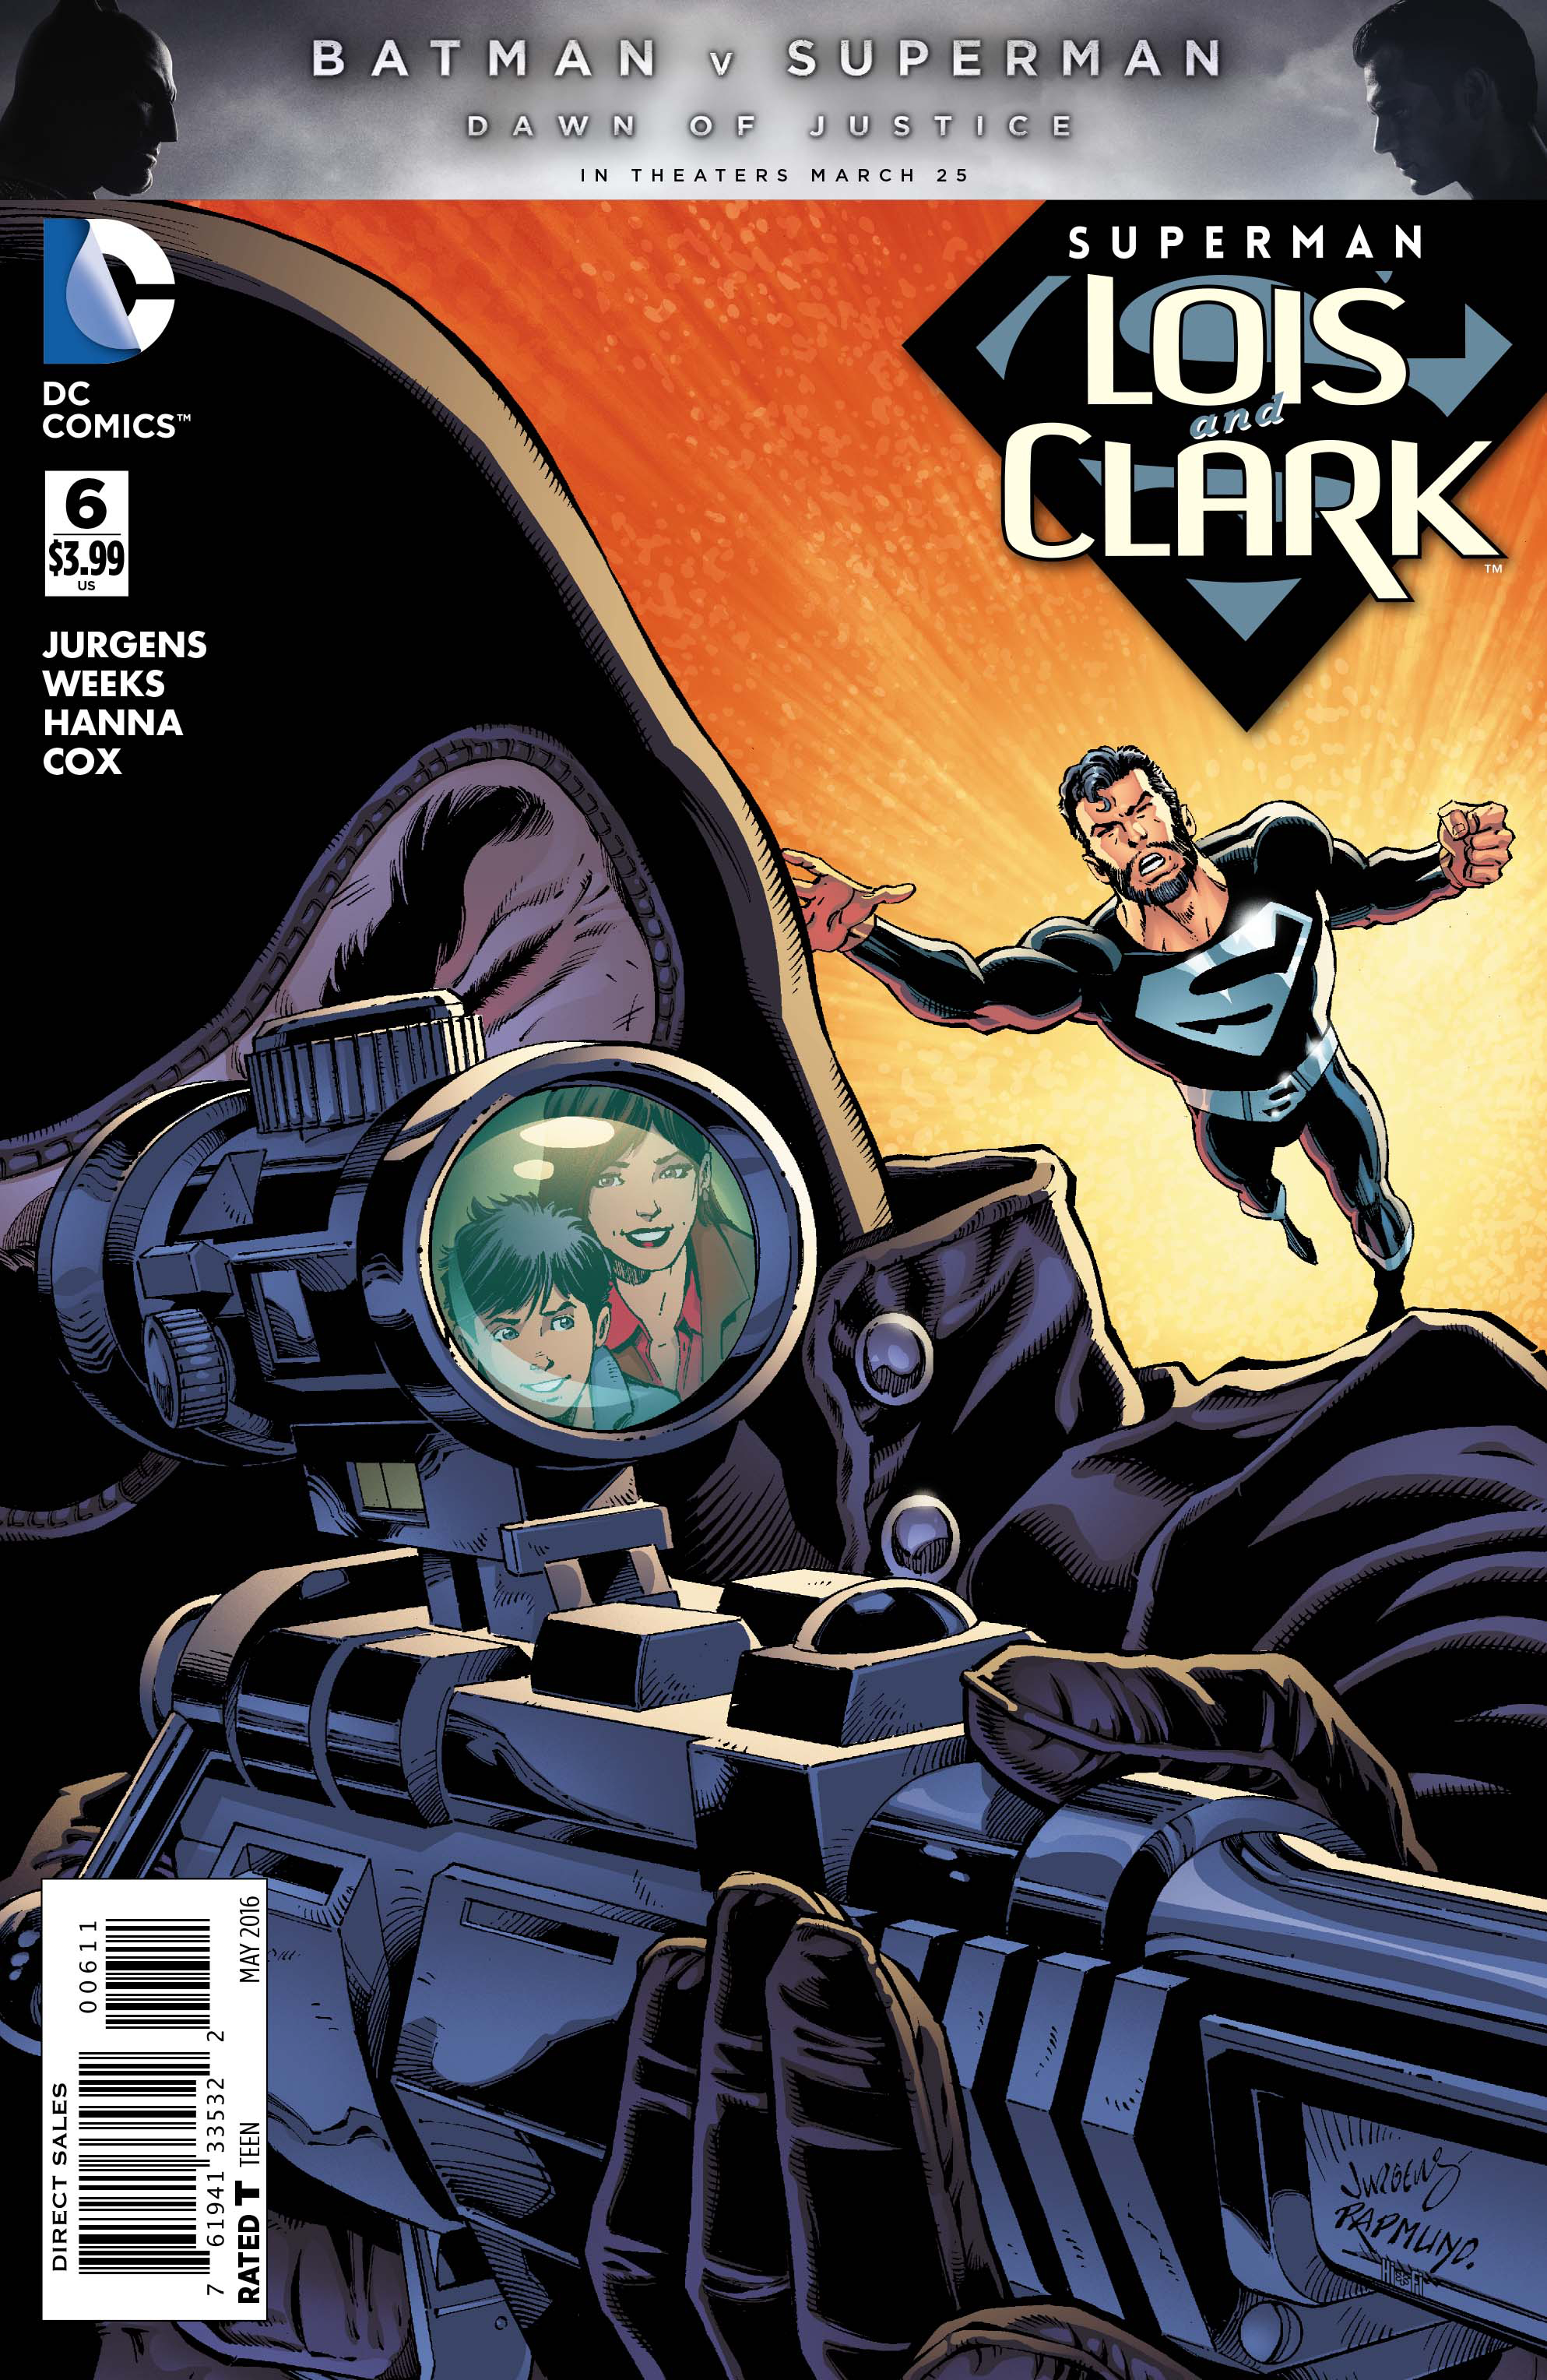 SUPERMAN LOIS AND CLARK #6